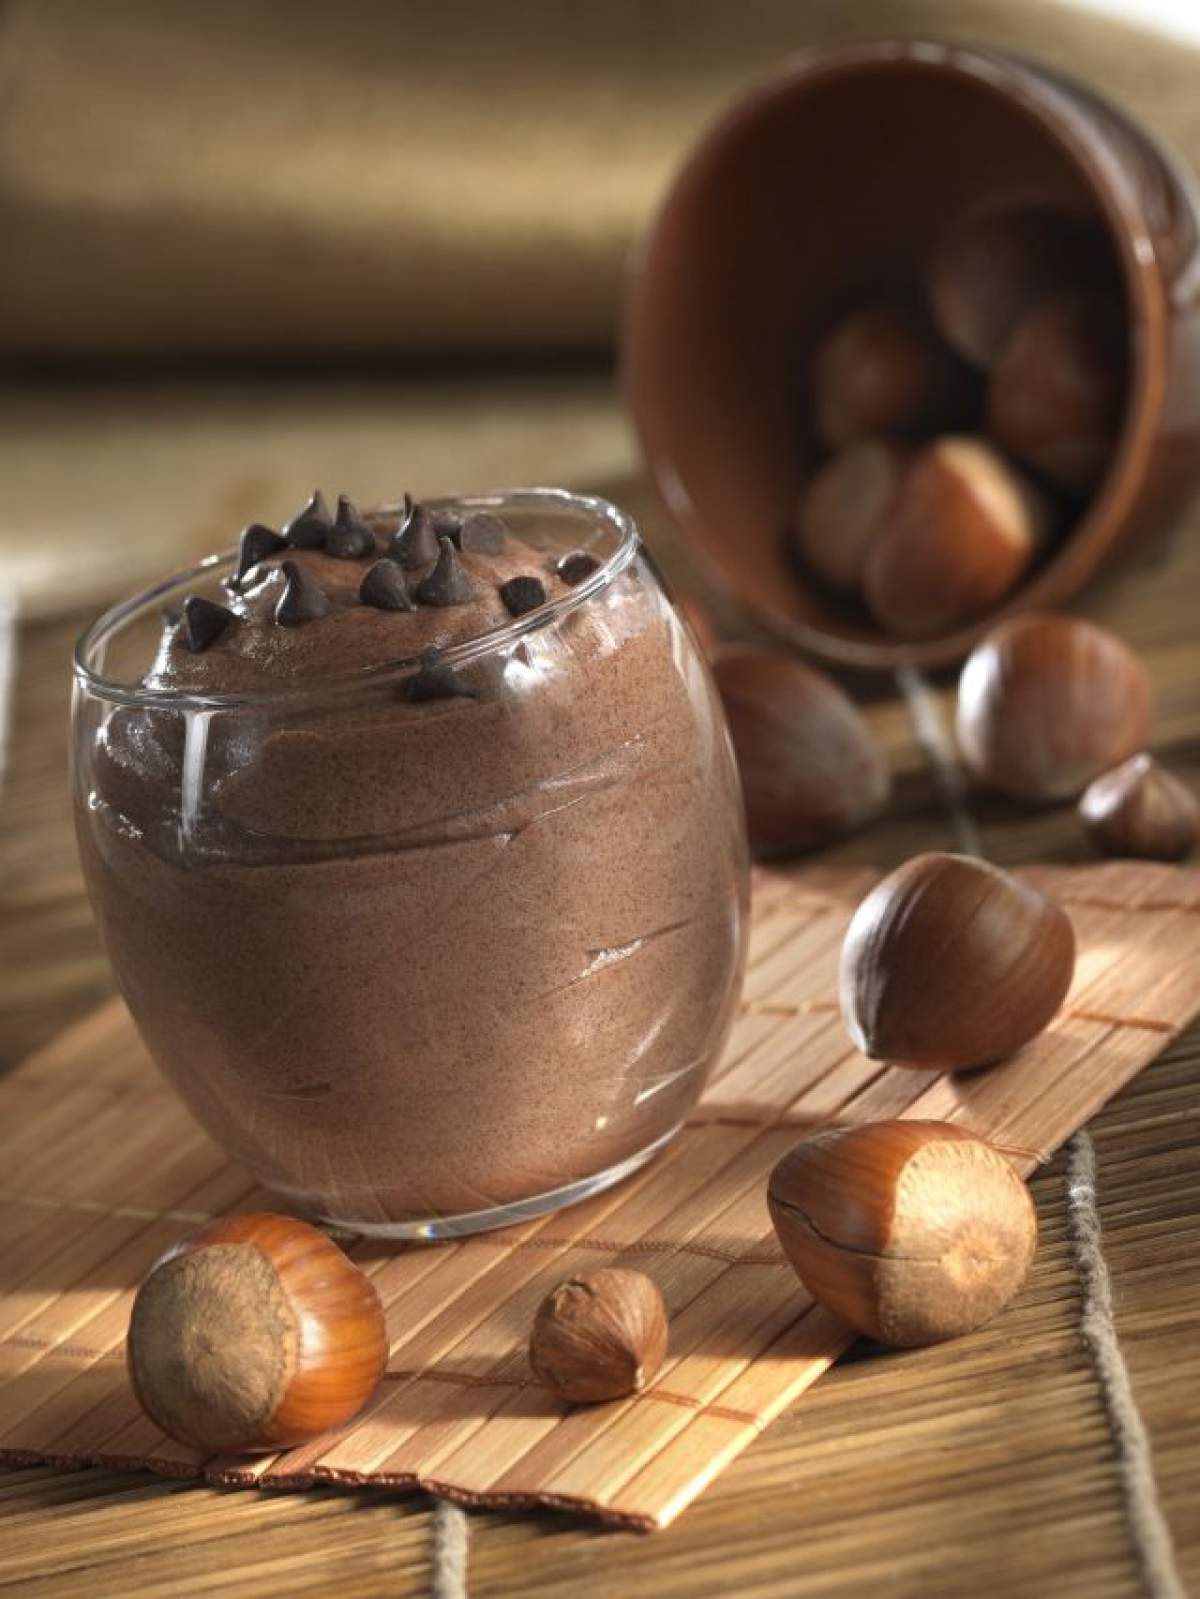 REŢETA ZILEI: Miercuri - Mousse de ciocolată cu mascarpone